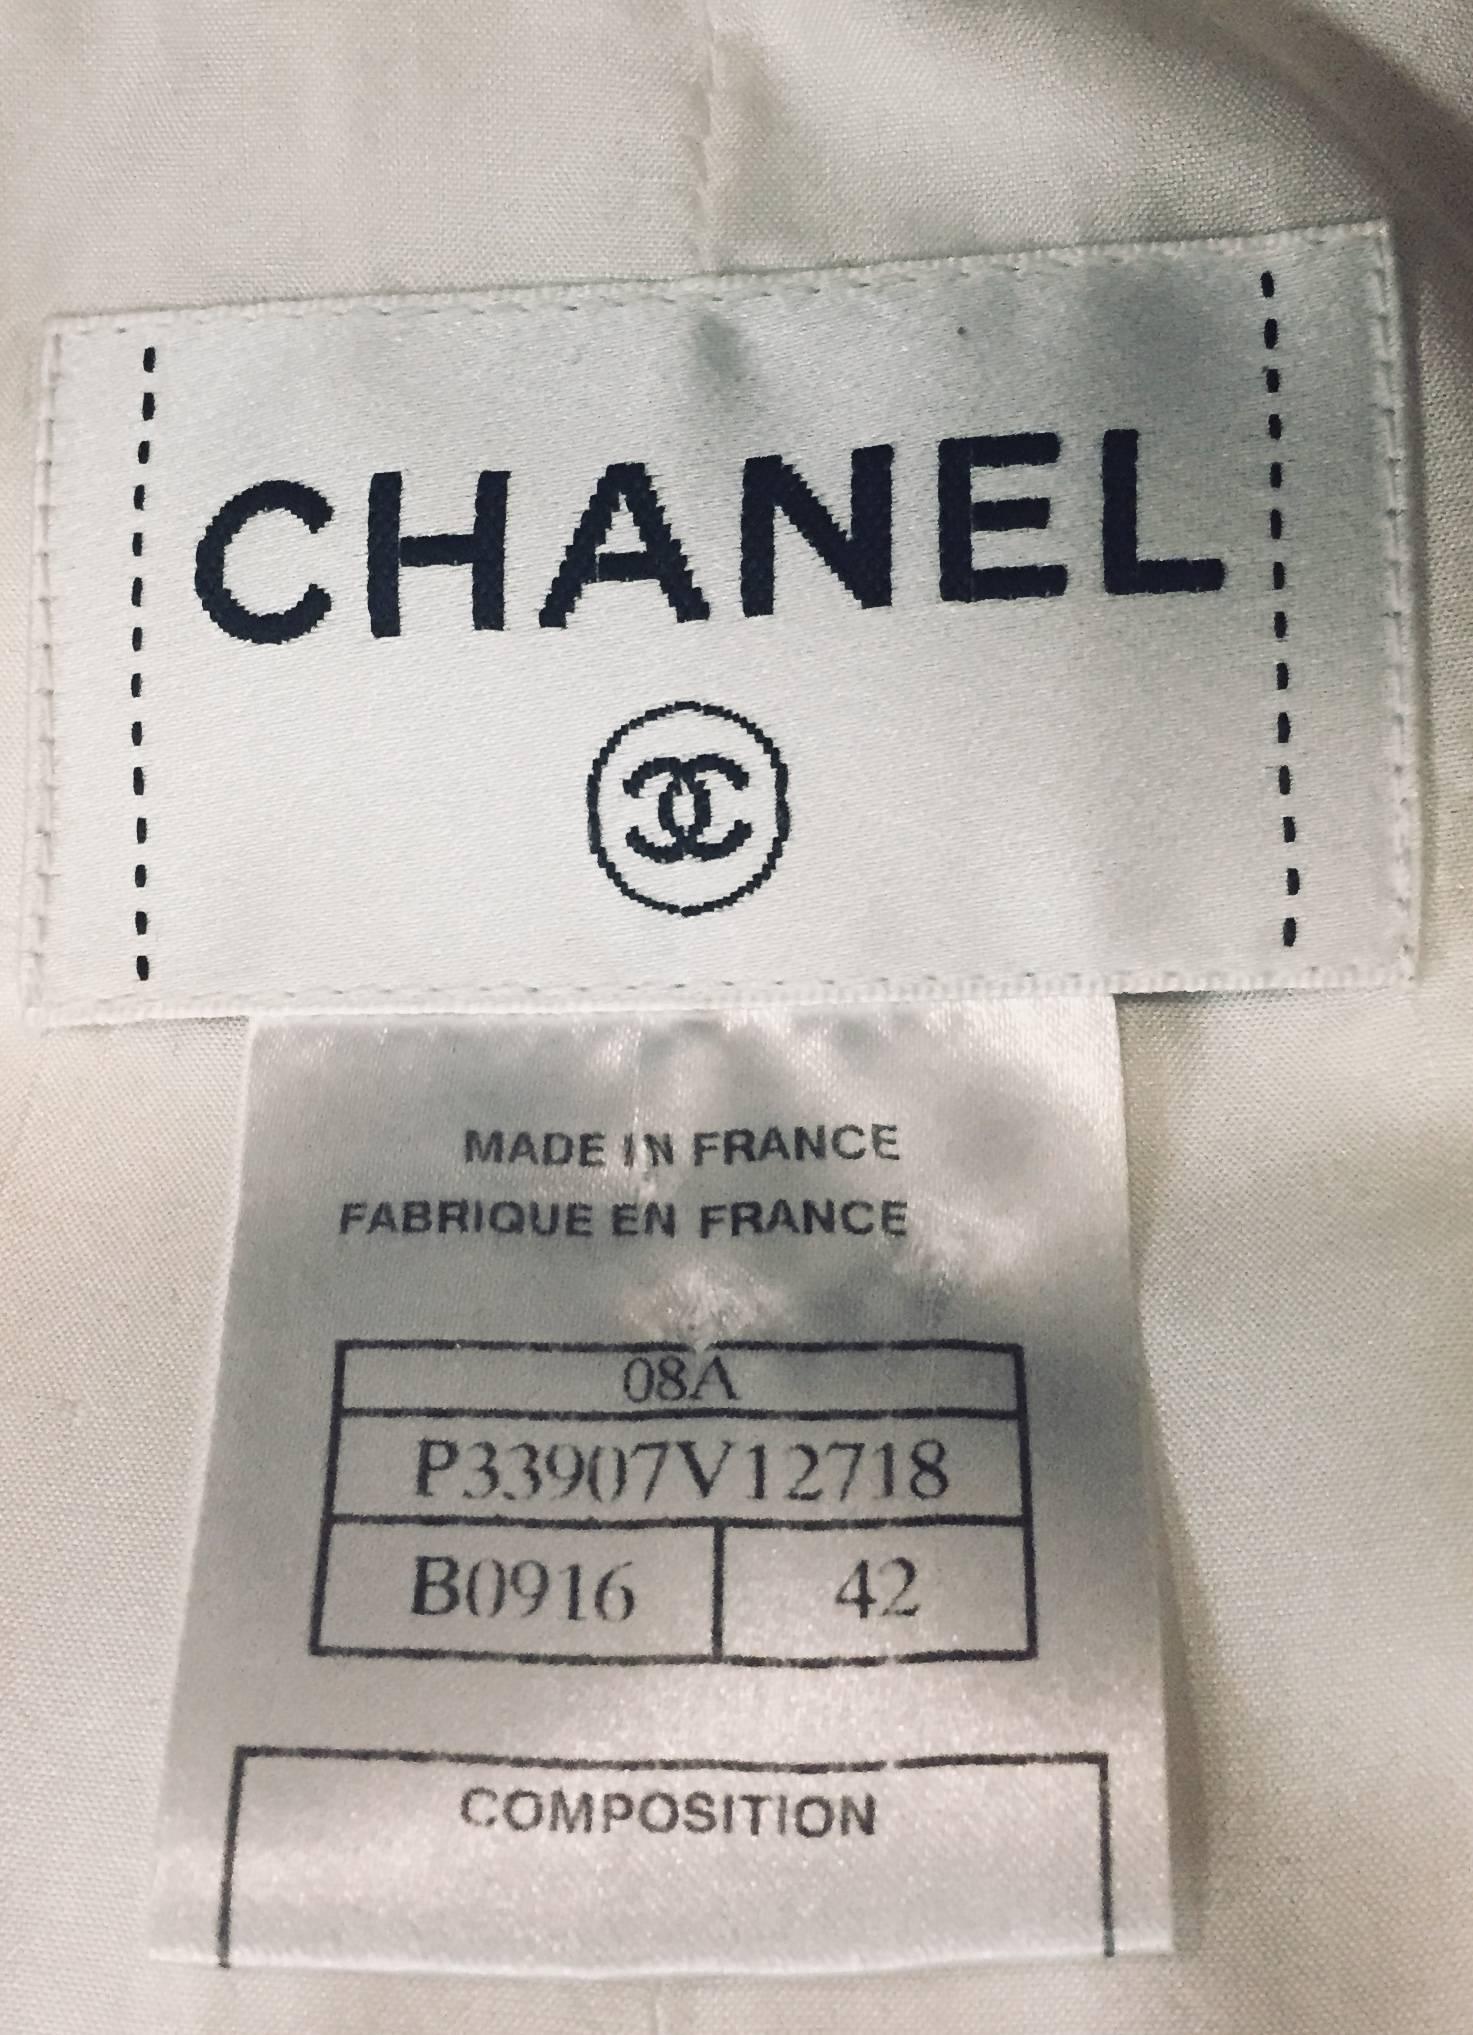 Chanel doppelreihige Weste im Smoking-Stil aus champagnerfarbener und schwarzer Seide mit 4 zinnfarbenen Chanel-Knöpfen zum Verschließen.   Diese Weste kann mit einfachen Seidenpalazzo-Hosen oder mit einem langen oder kurzen Rock getragen werden.  